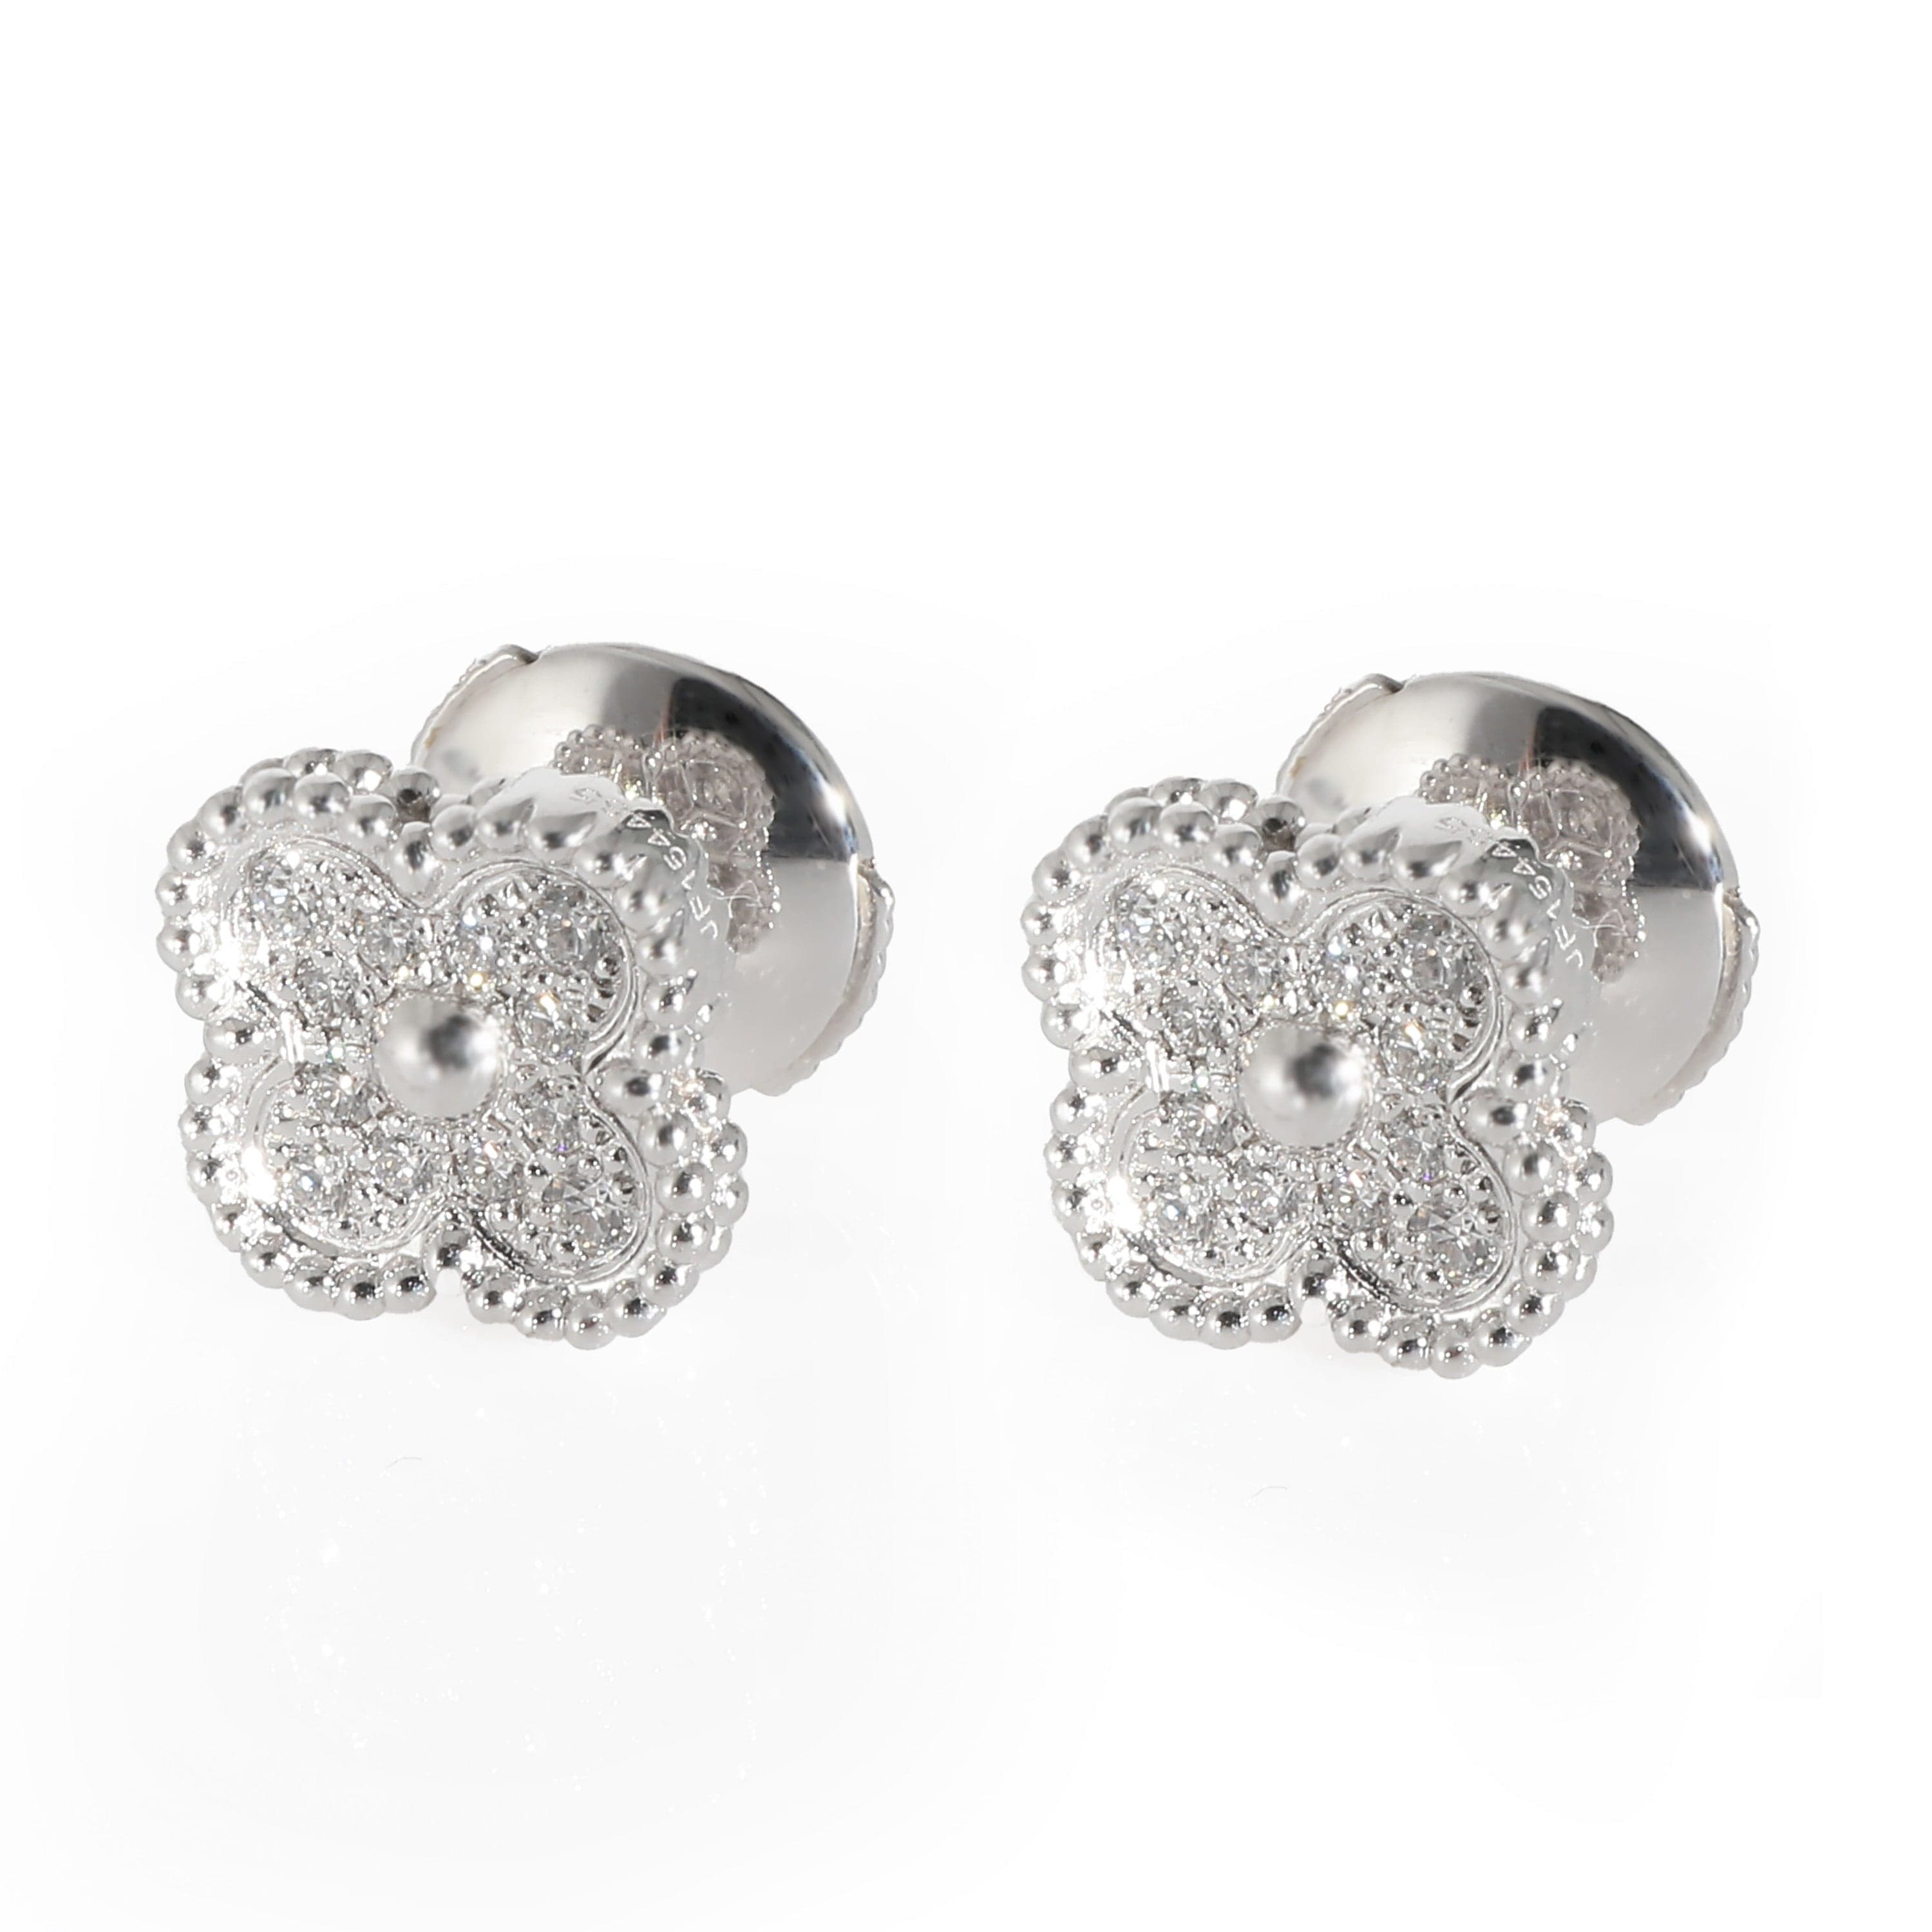 Van Cleef & Arpels Van Cleef & Arpels Alhambra Earrings in 18k White Gold 0.16 CTW